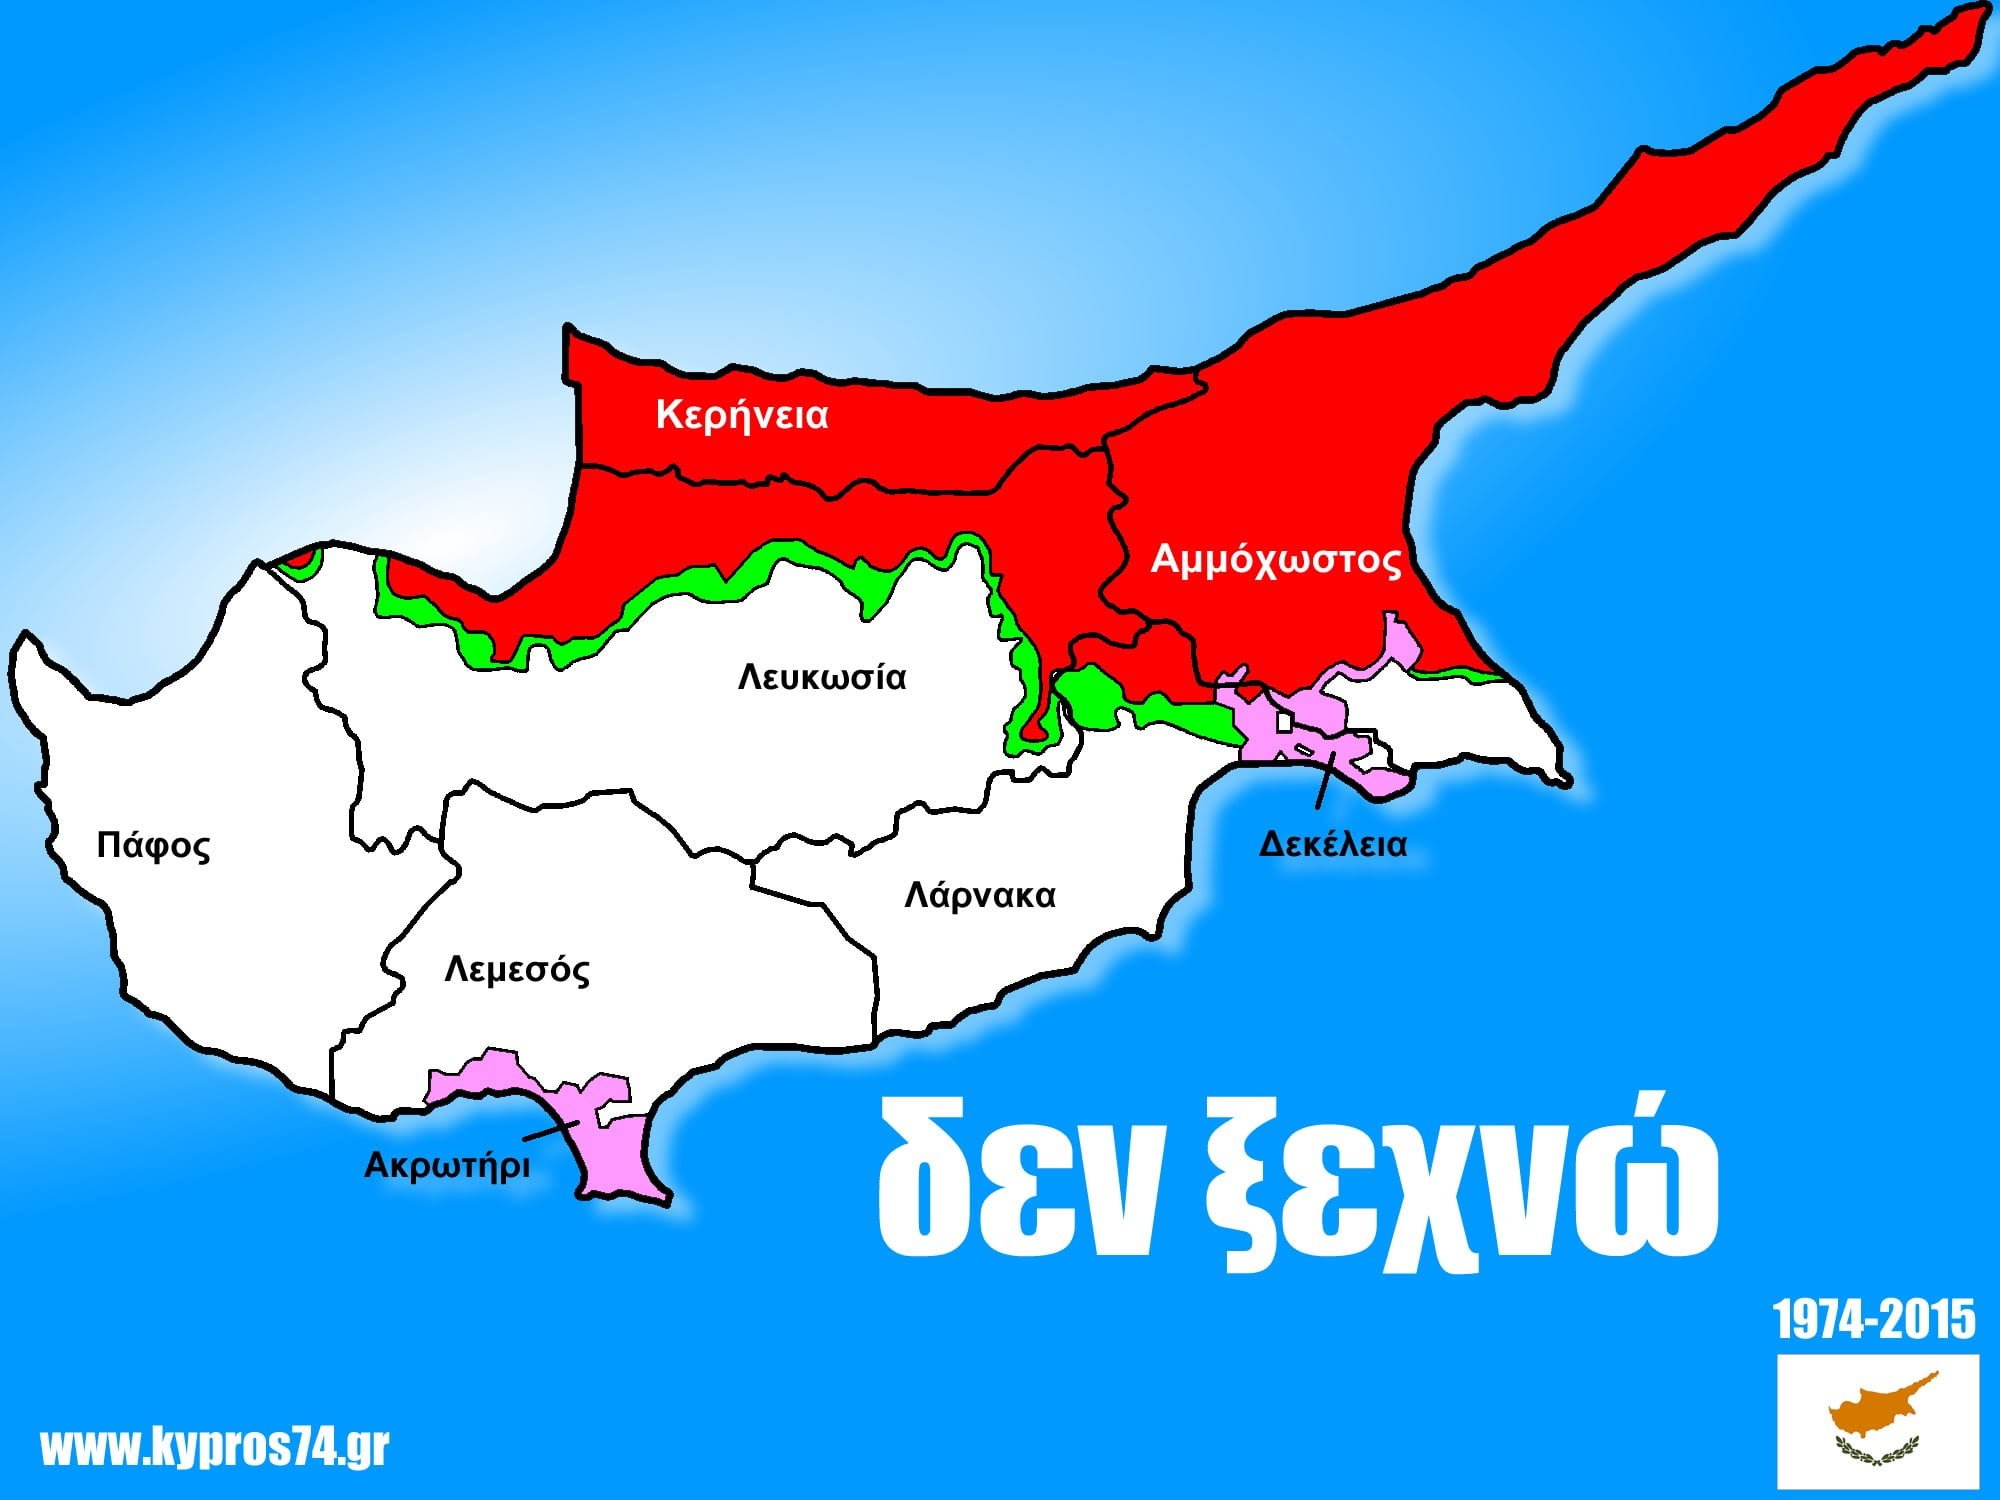 Εκδήλωση στην Αθήνα με θέμα: «Σύγχρονες όψεις και προκλήσεις του Κυπριακού Ζητήματος»